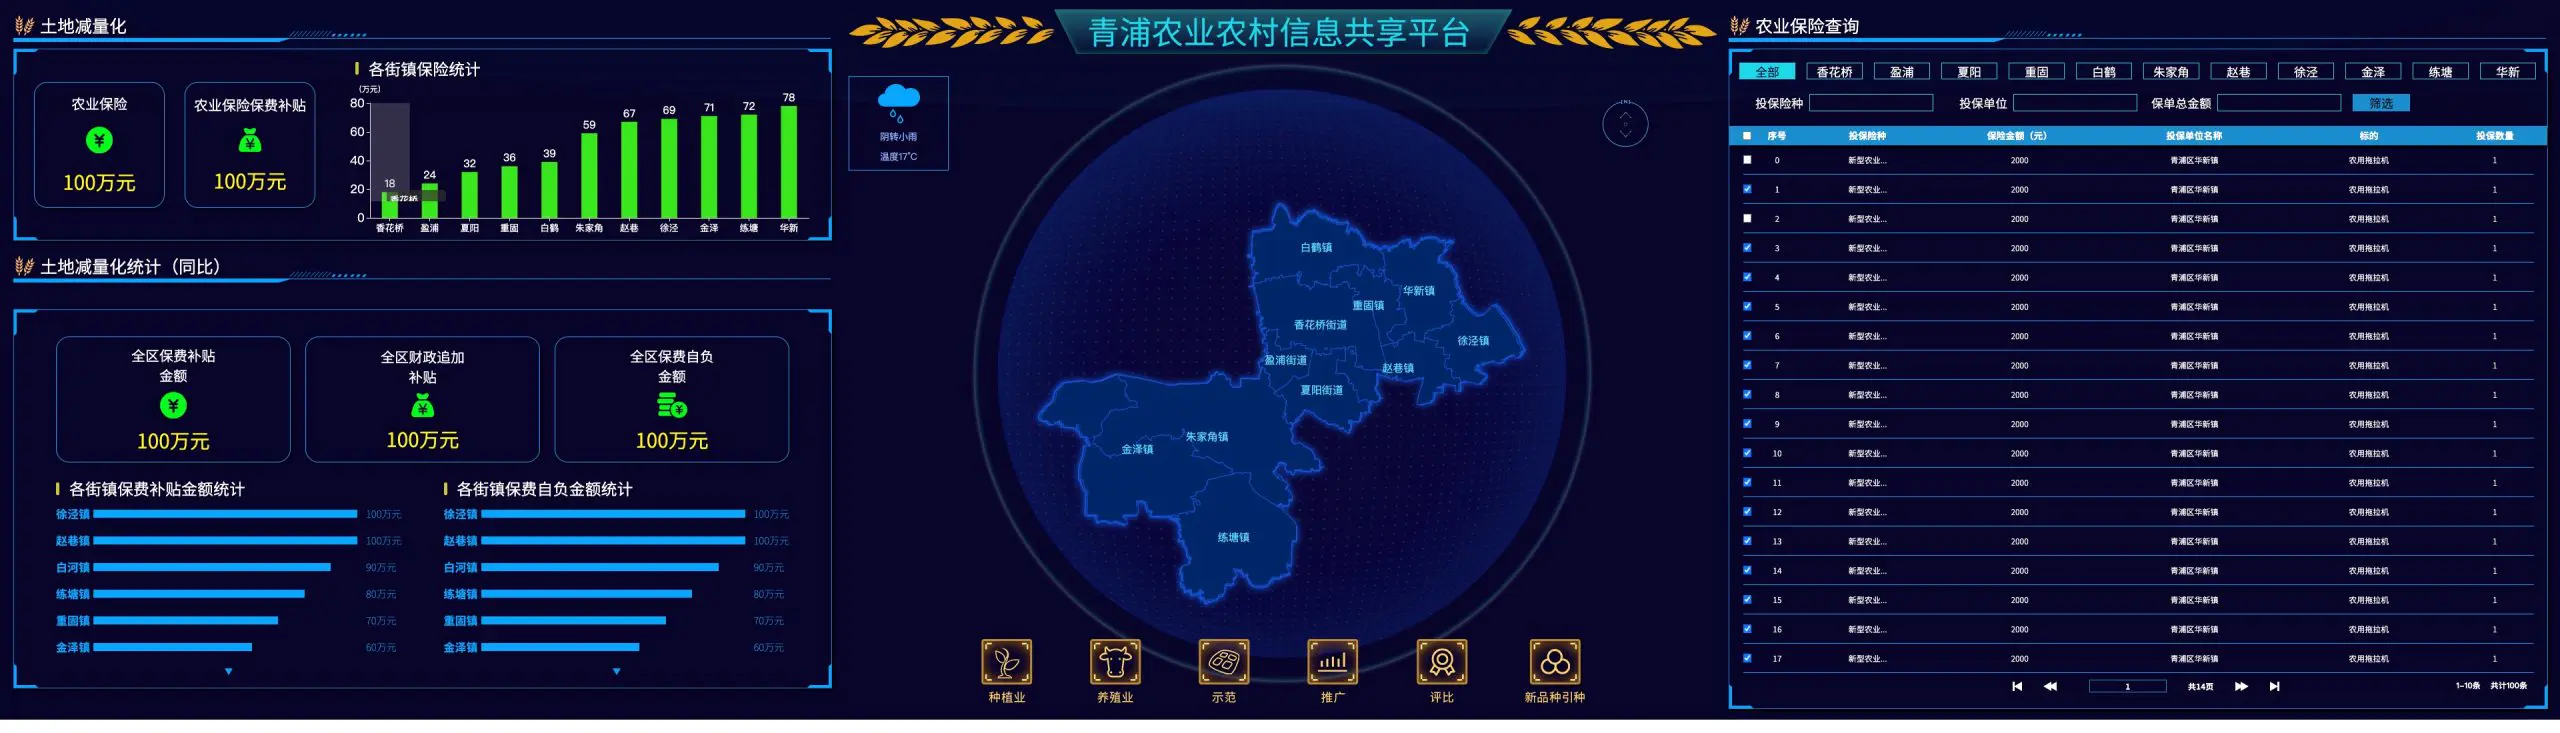 大屏 青浦农业农村信息共享平台